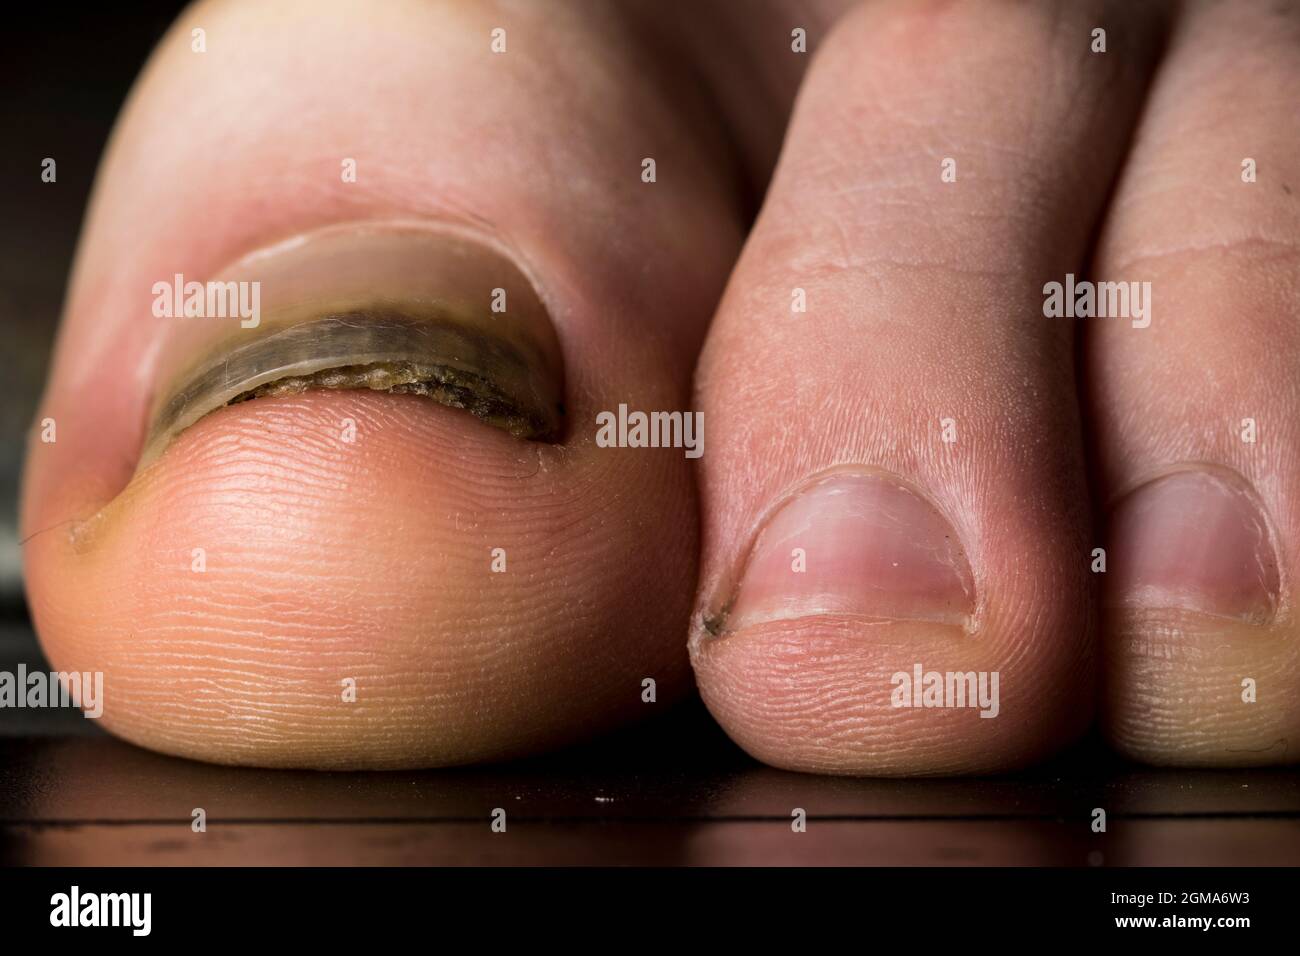 Malattia dell'unghia immagini e fotografie stock ad alta risoluzione - Alamy